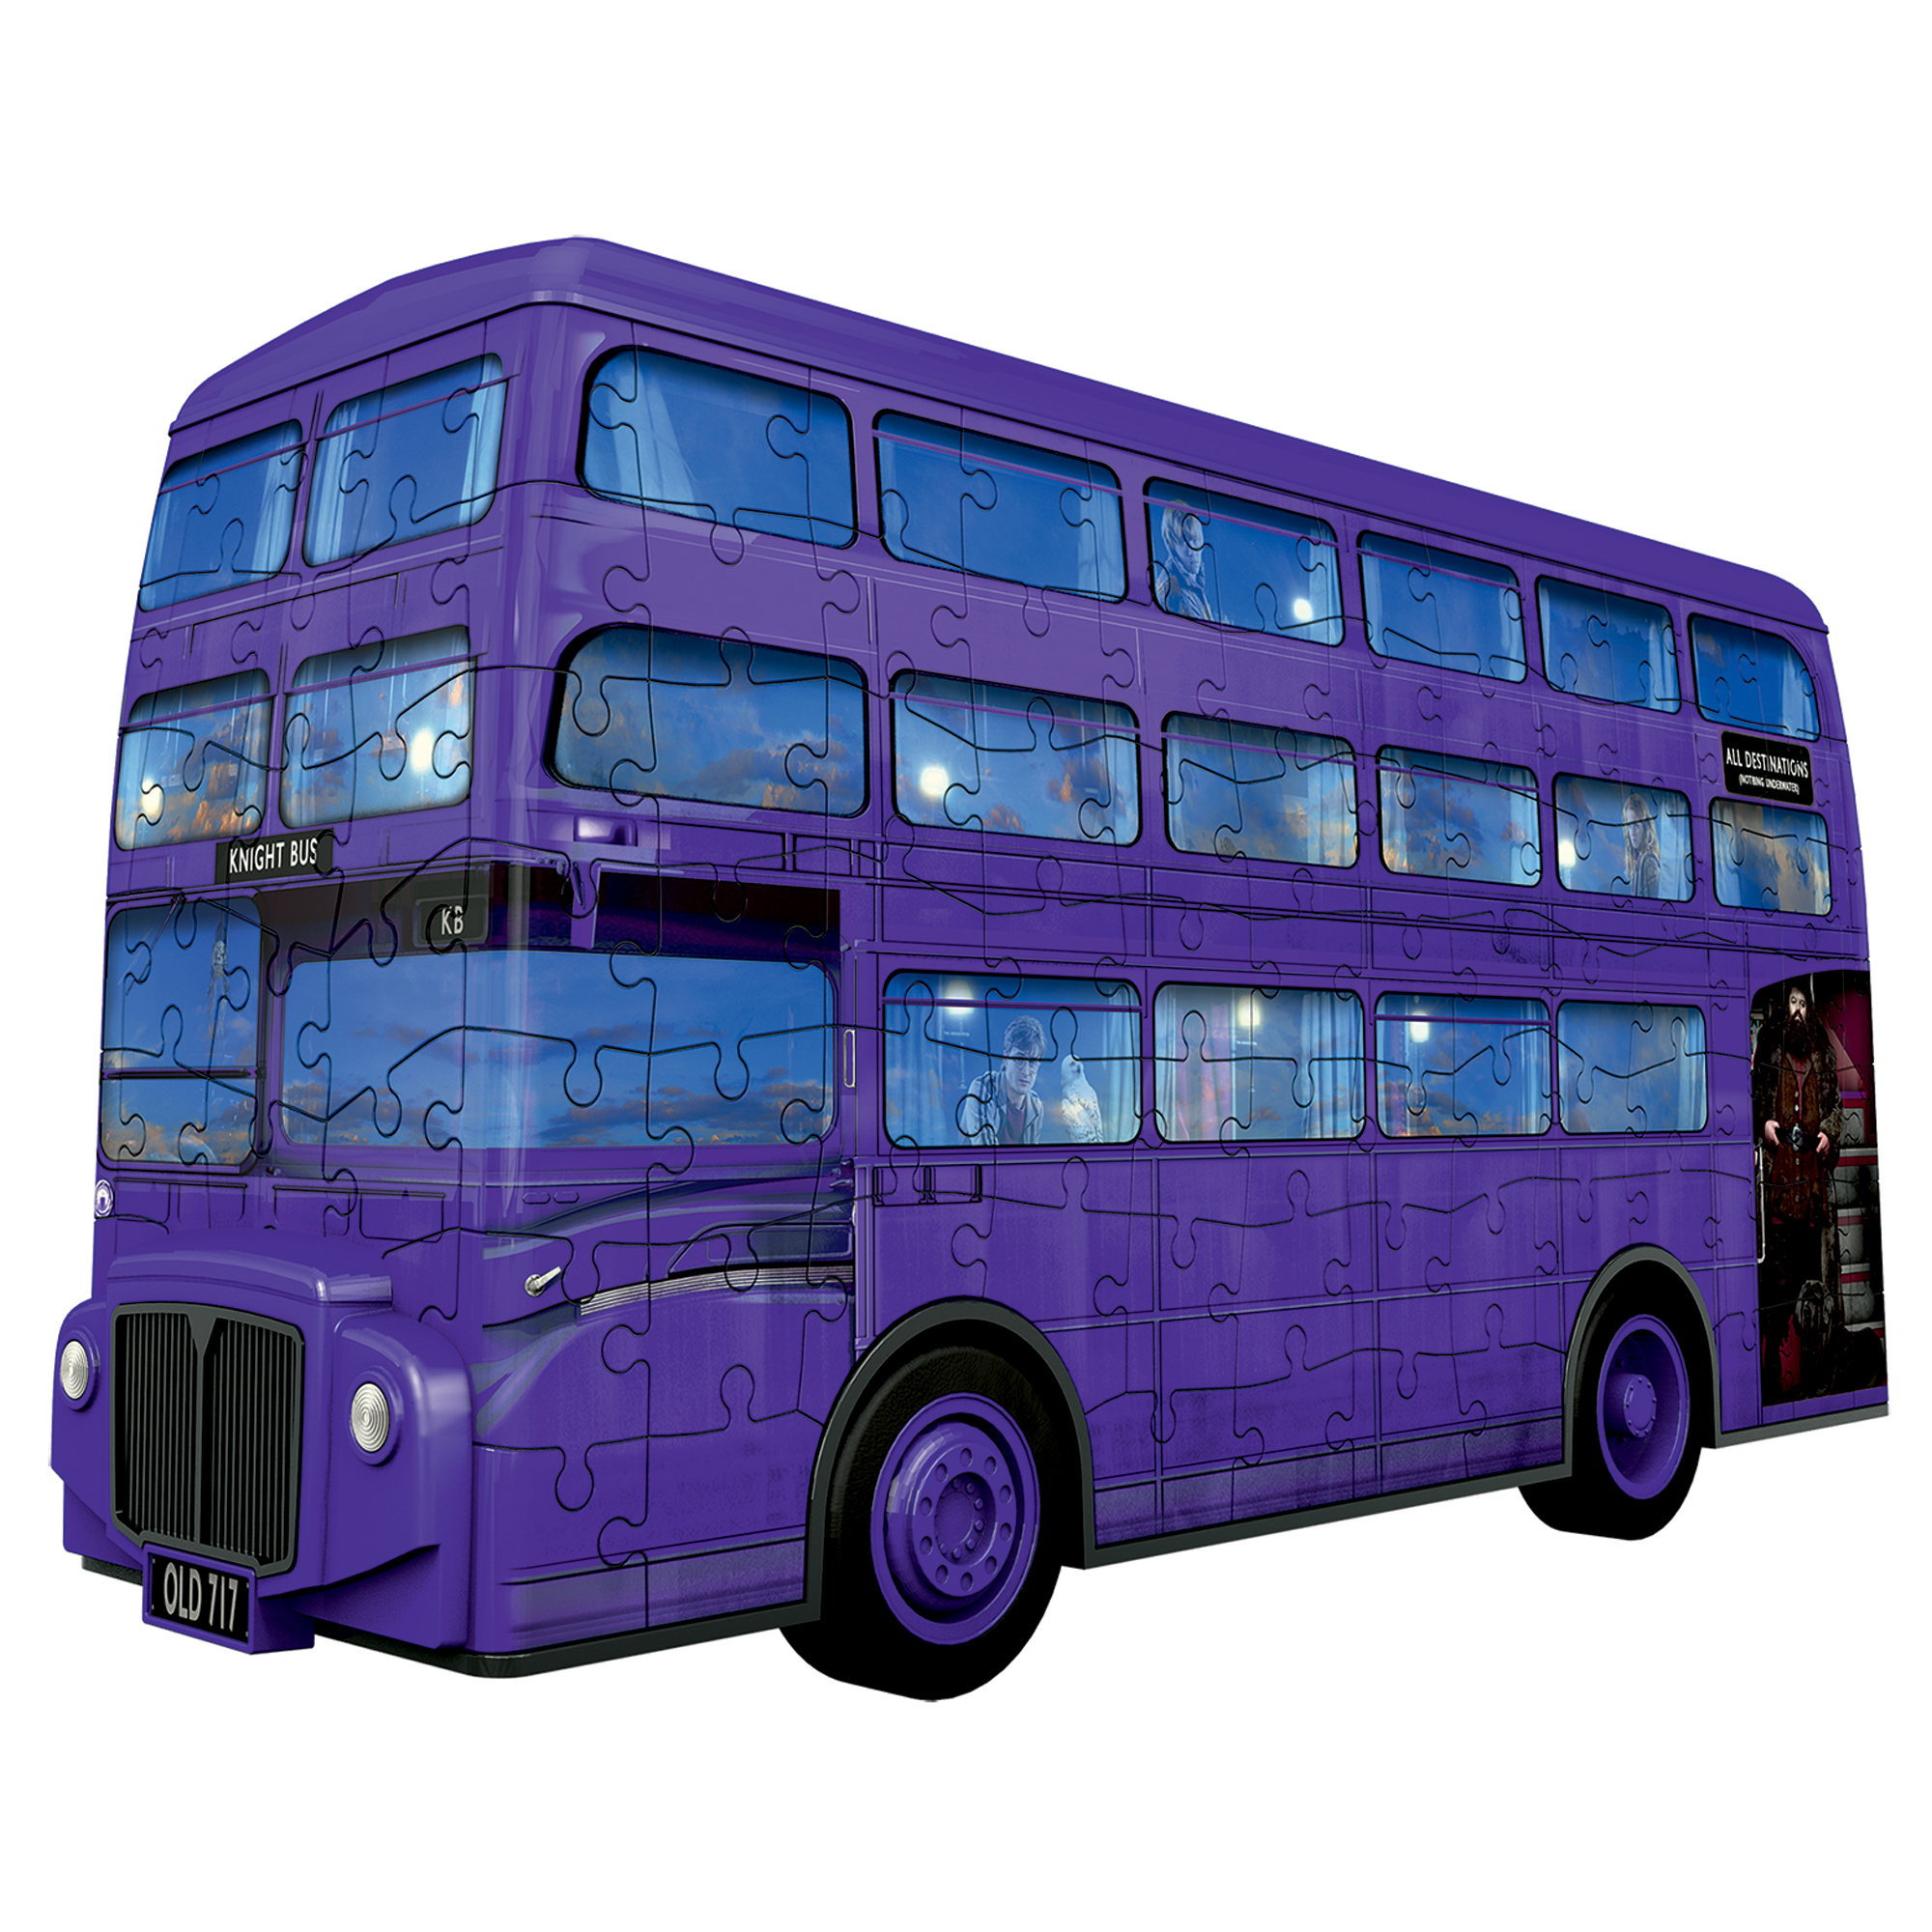 Ravensburger 3D puzzle Bus Nottetempo Harry Potter, 216 pezzi - Harry Potter, Ravensburger